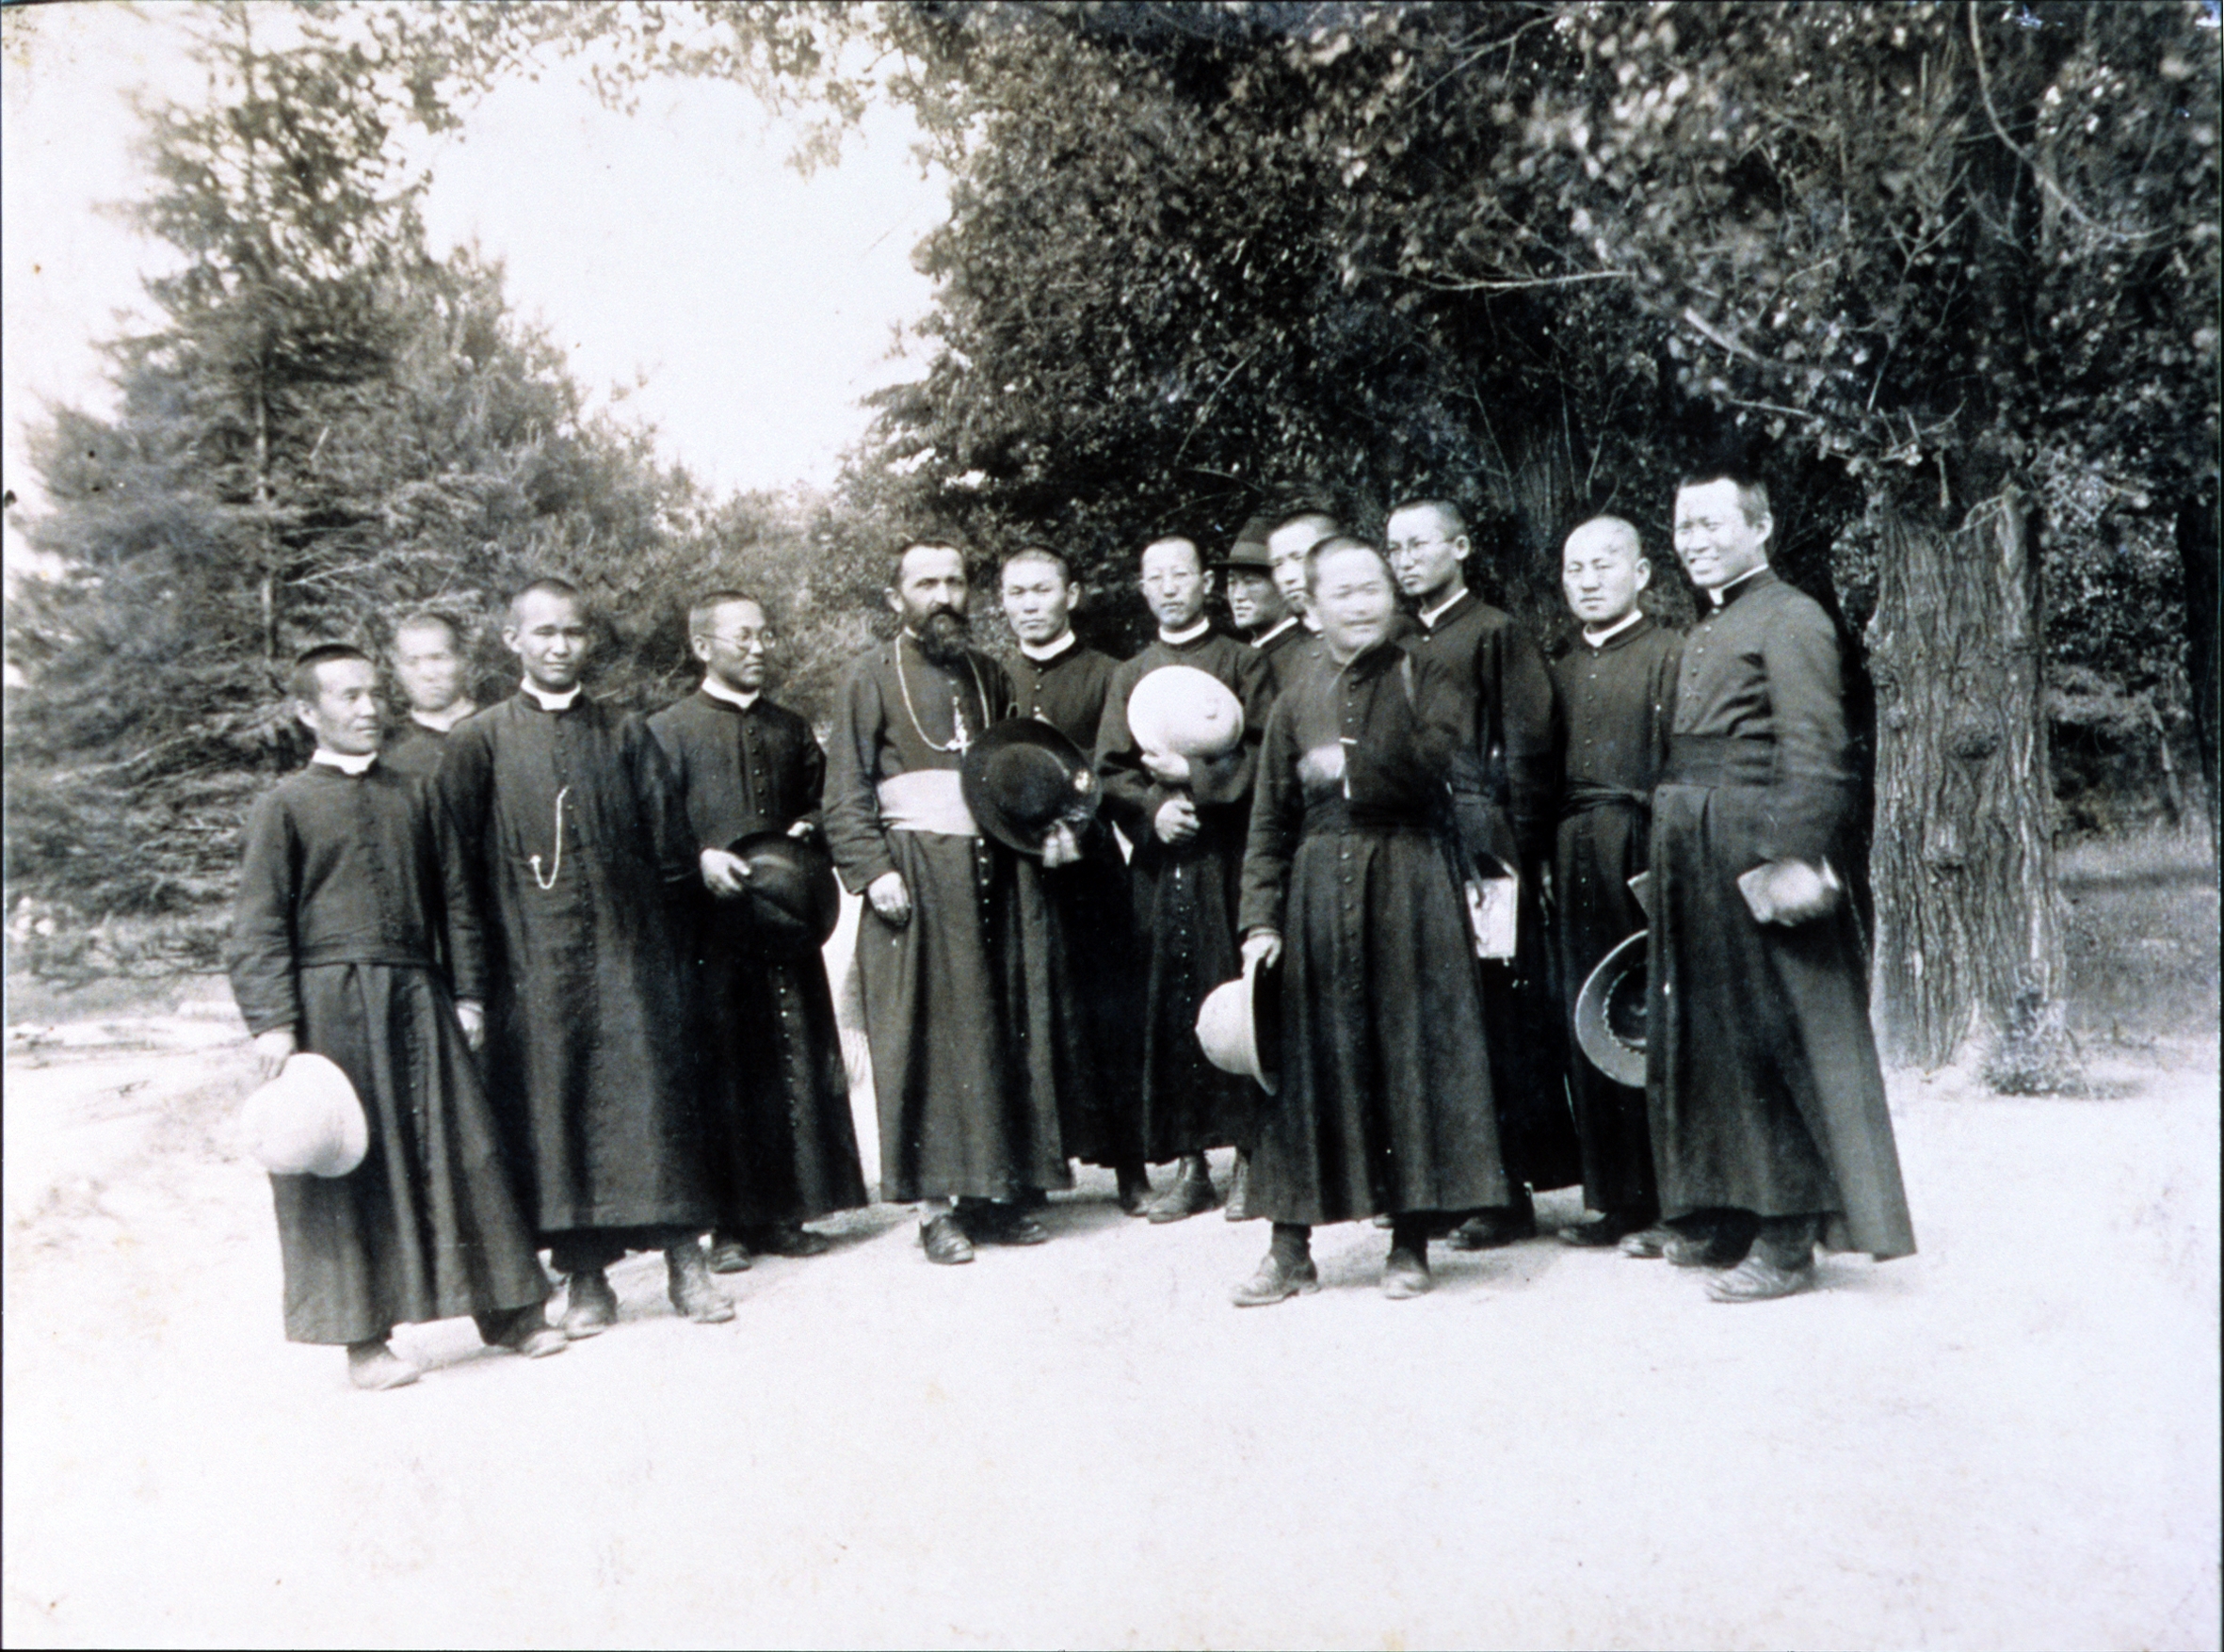 용산 예수성심신학교(1887~1942) (3)의 관련된 이미지 입니다.